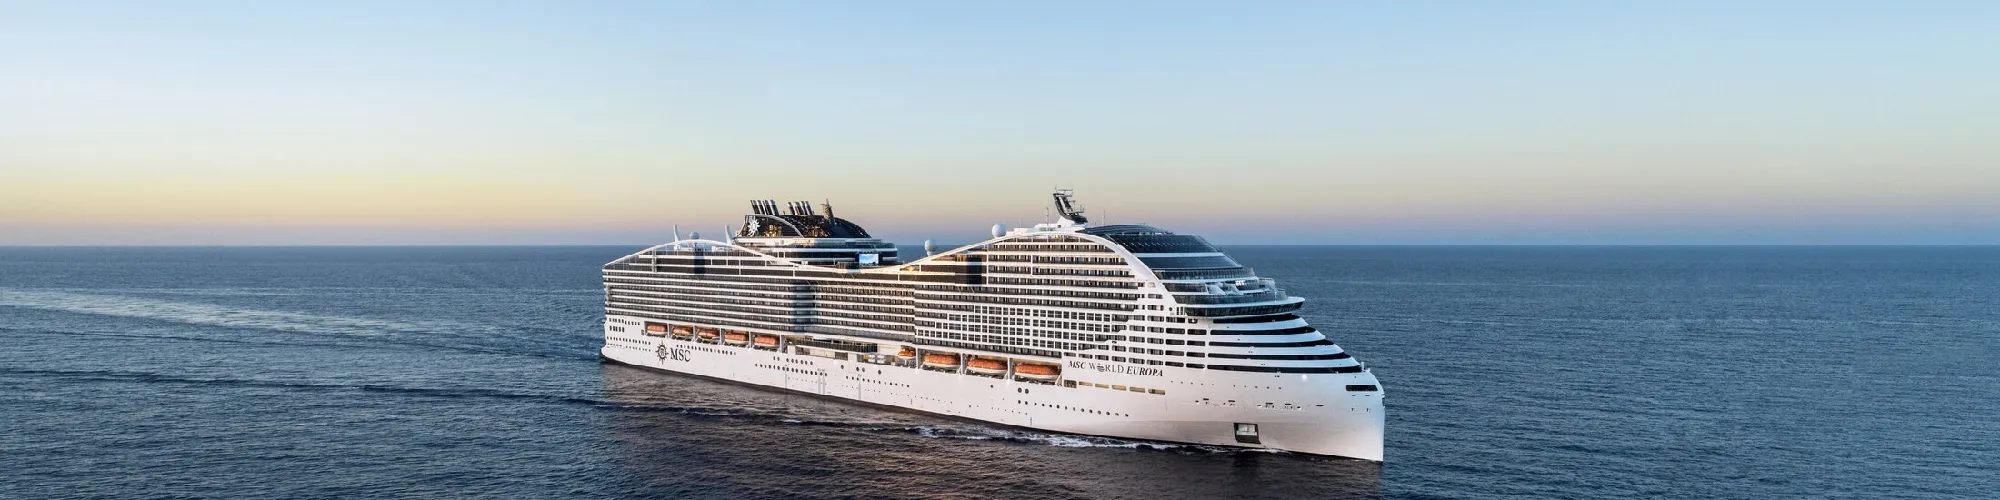 MSC Cruises background image